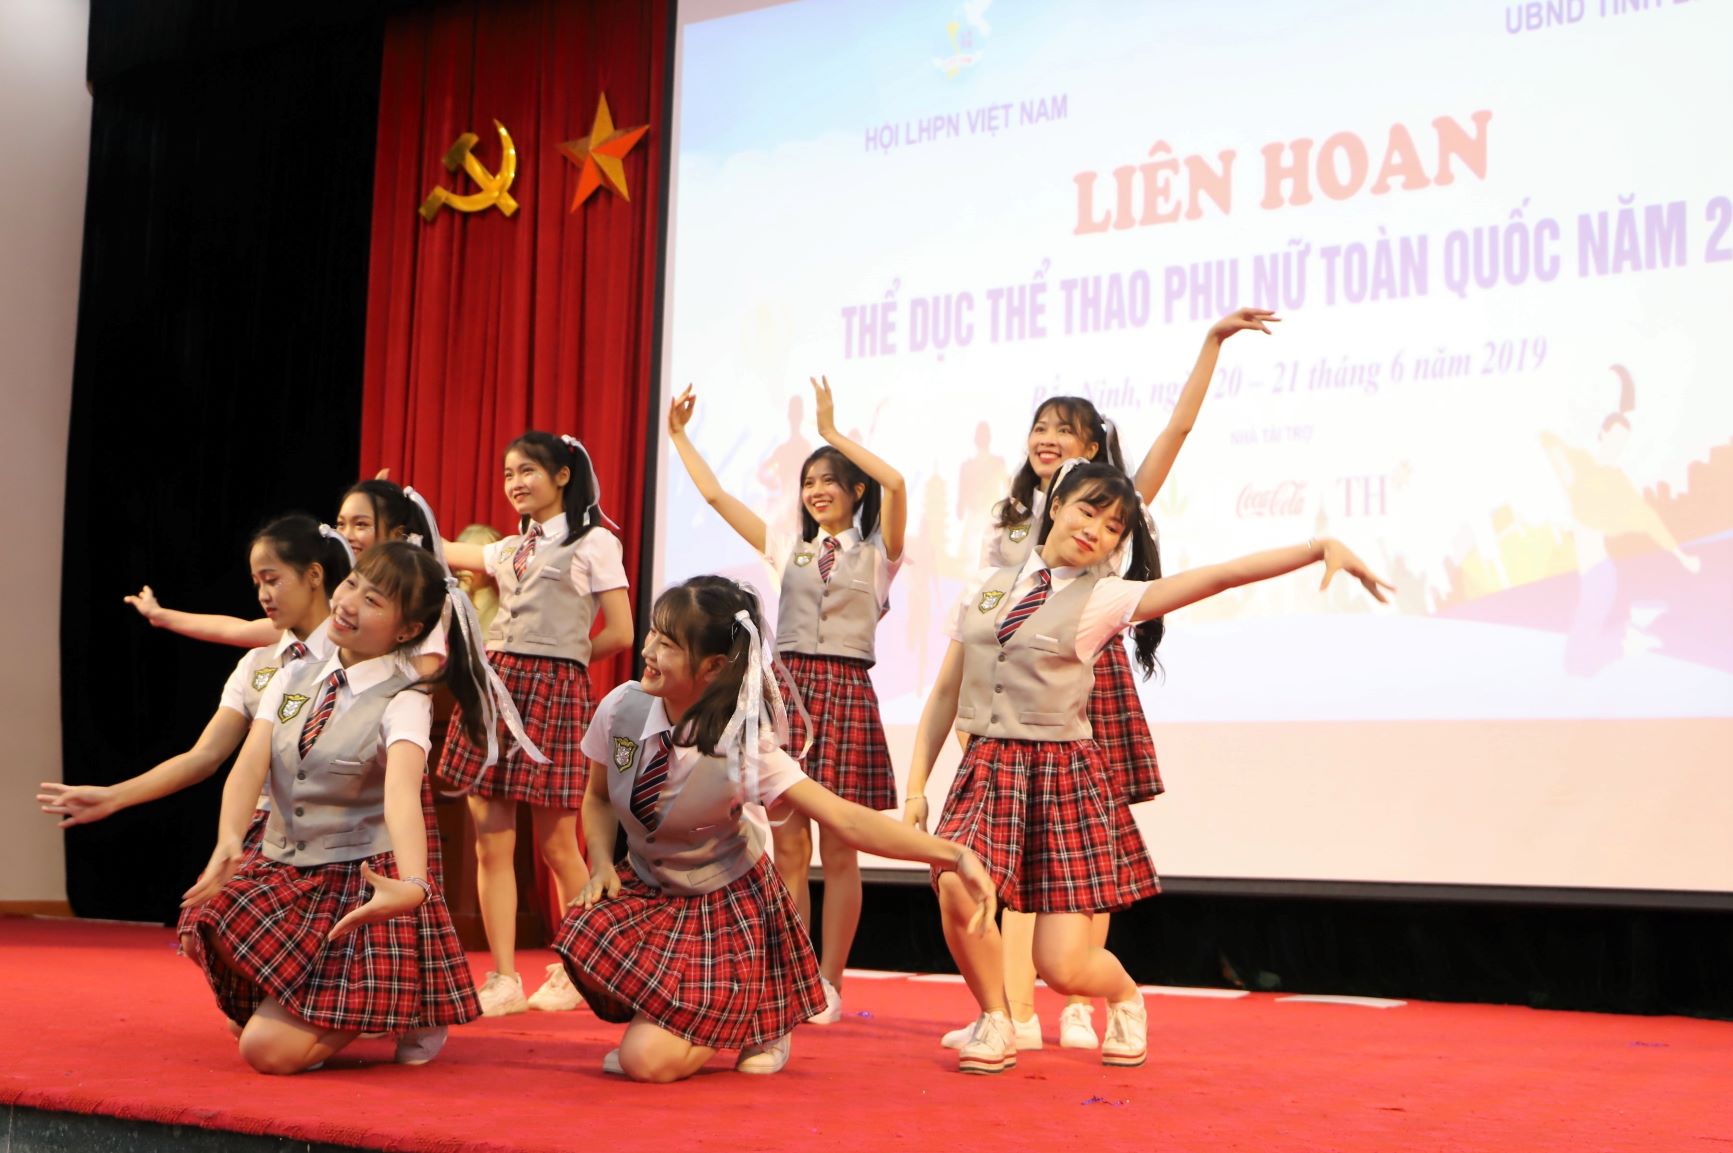 Các nữ vận động viên đến từ Hội phụ nữ Bộ Công An lựa chọn phong cách nhí nhảnh của các nữ sinh để thể hiện bài nhảy múa dân vũ trên nền nhạc mashup một số bài hát nhạc trẻ tiếng Việt.